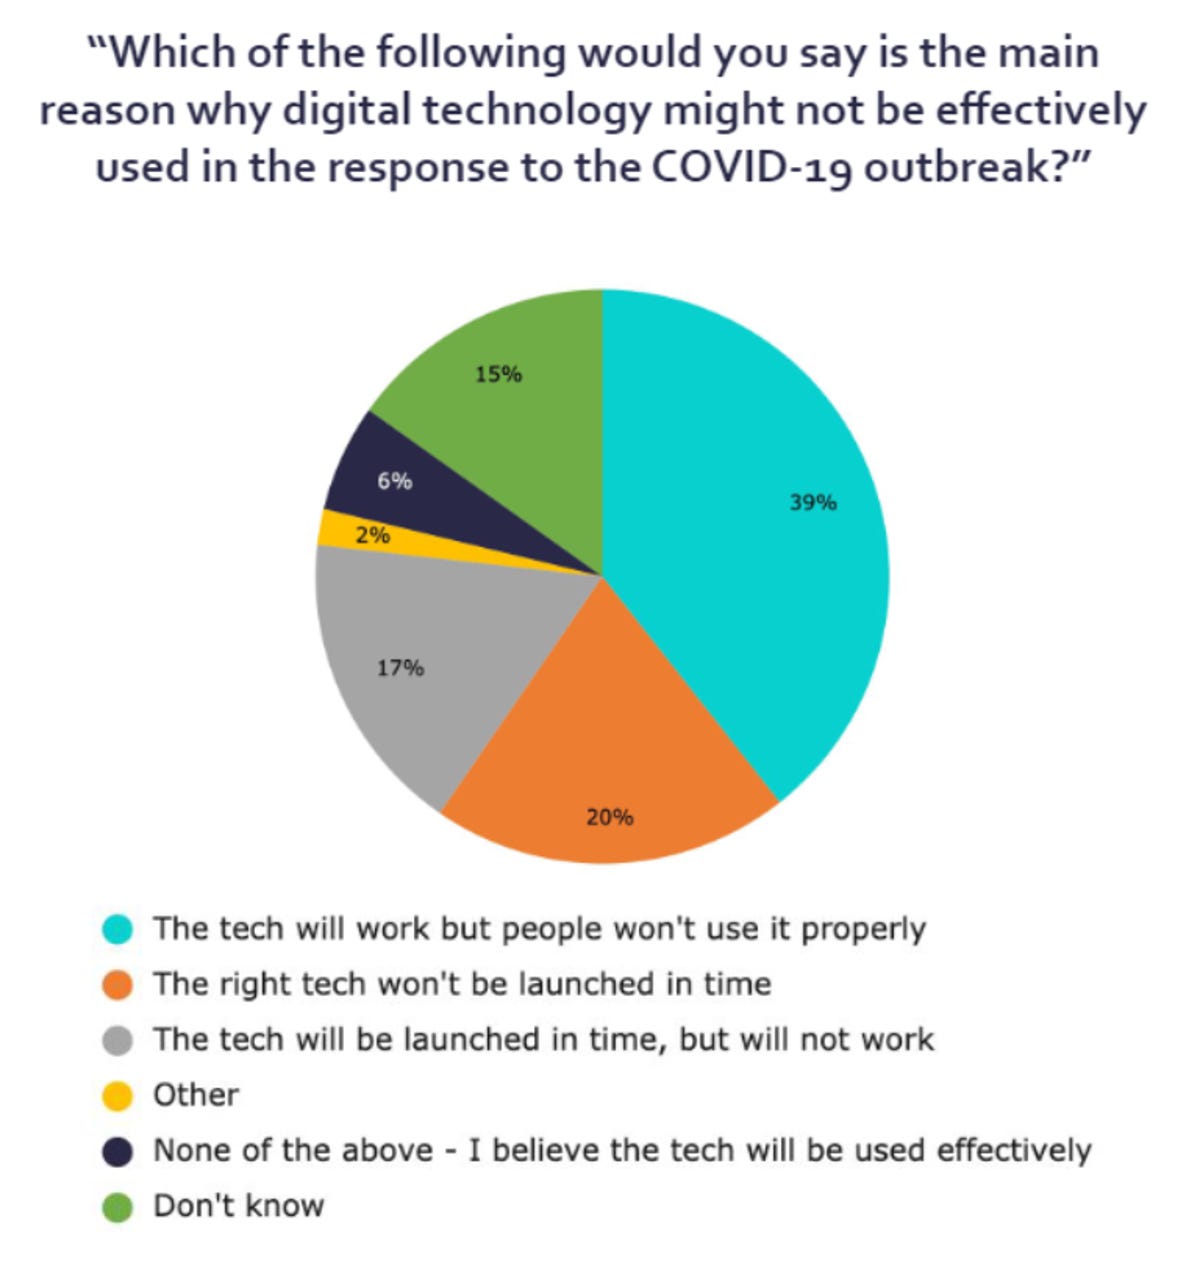 cdei-reasons-digital-tech-wont-work.png